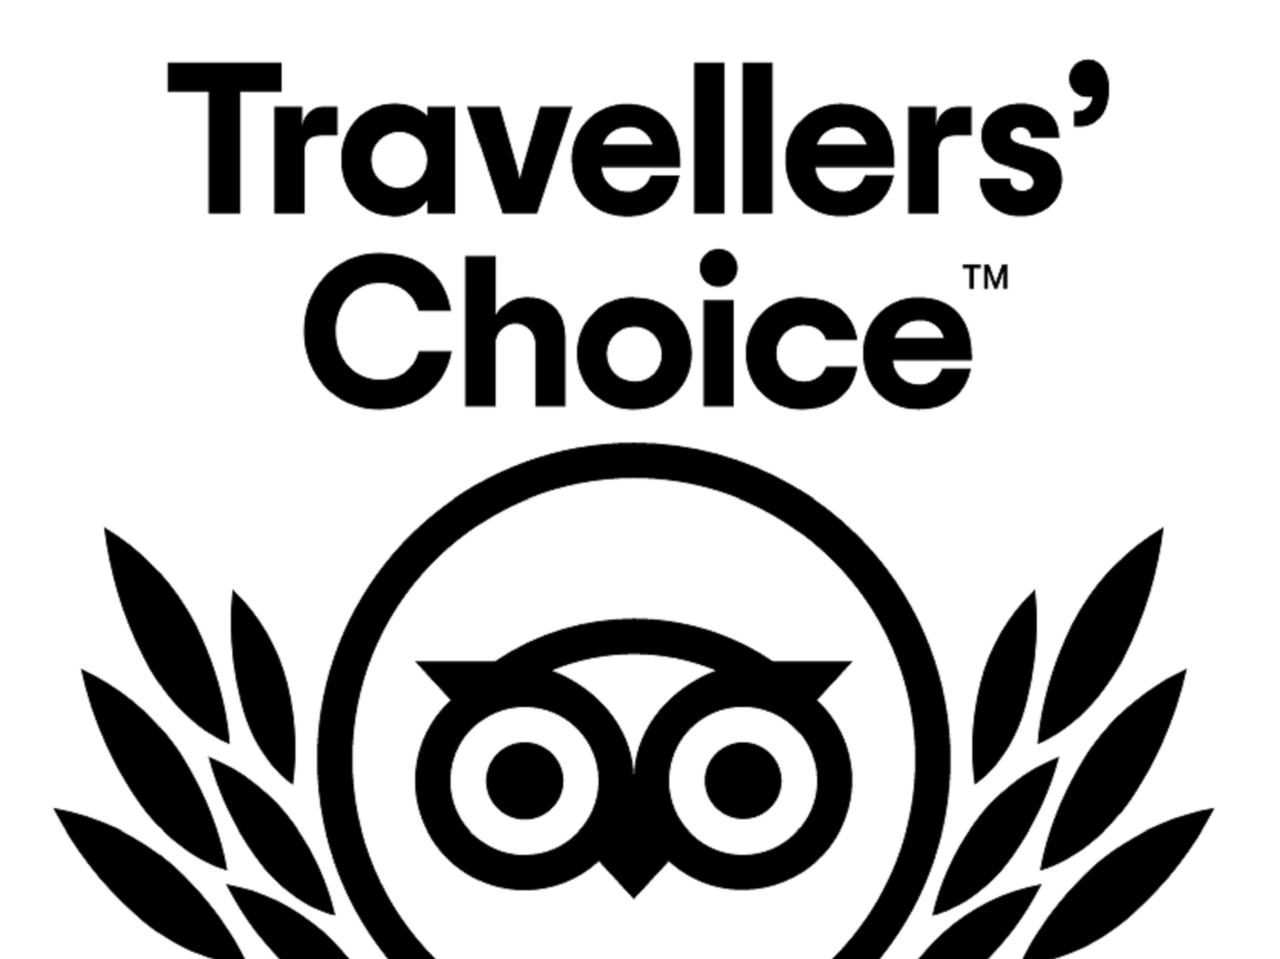 tripadvisor travellers choice 2020